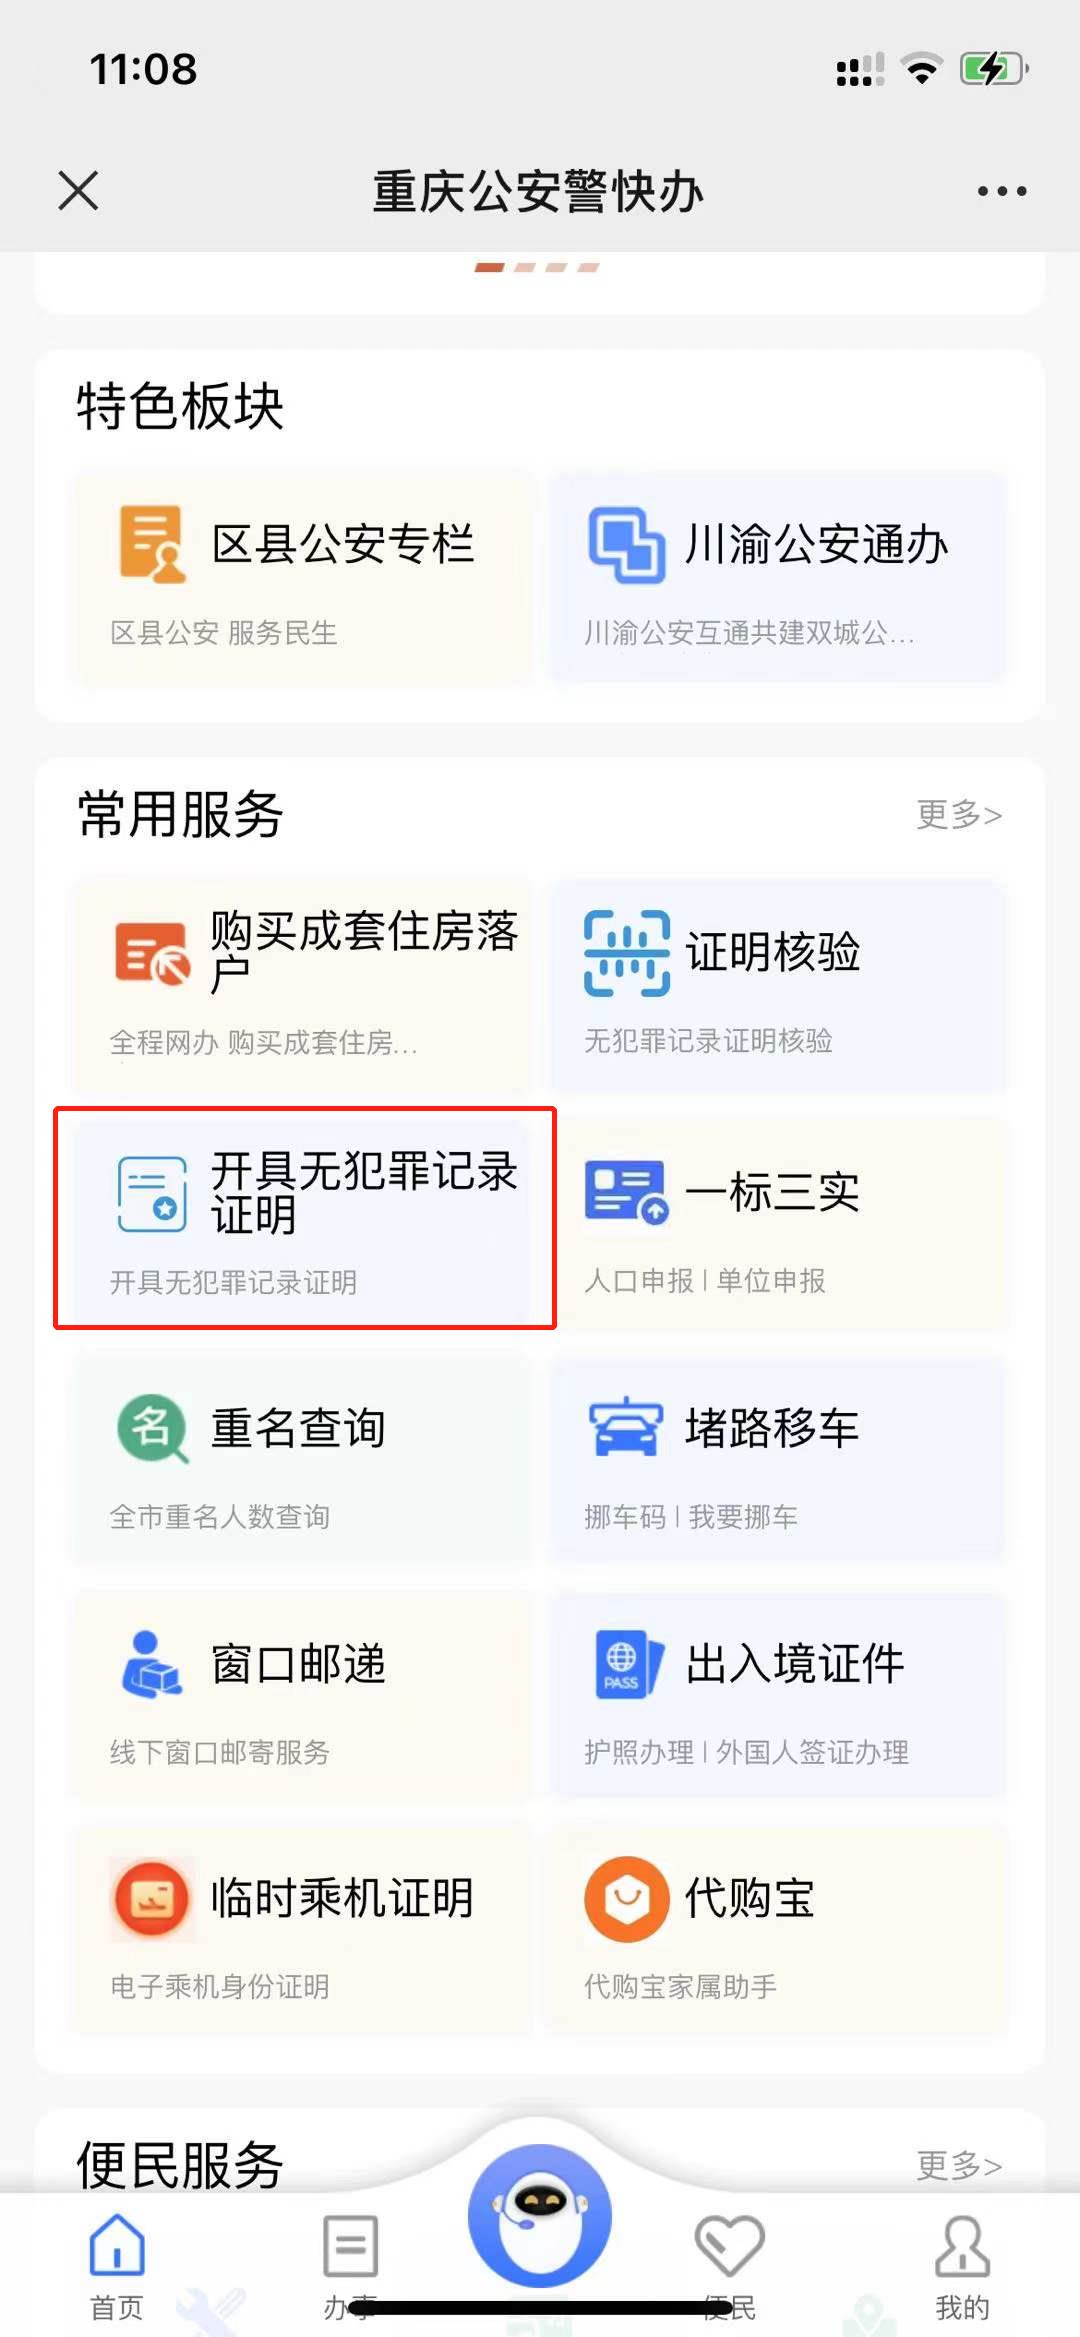 重庆如何网上办理无犯罪记录证明，申请公证书？，中国公证处海外服务中心